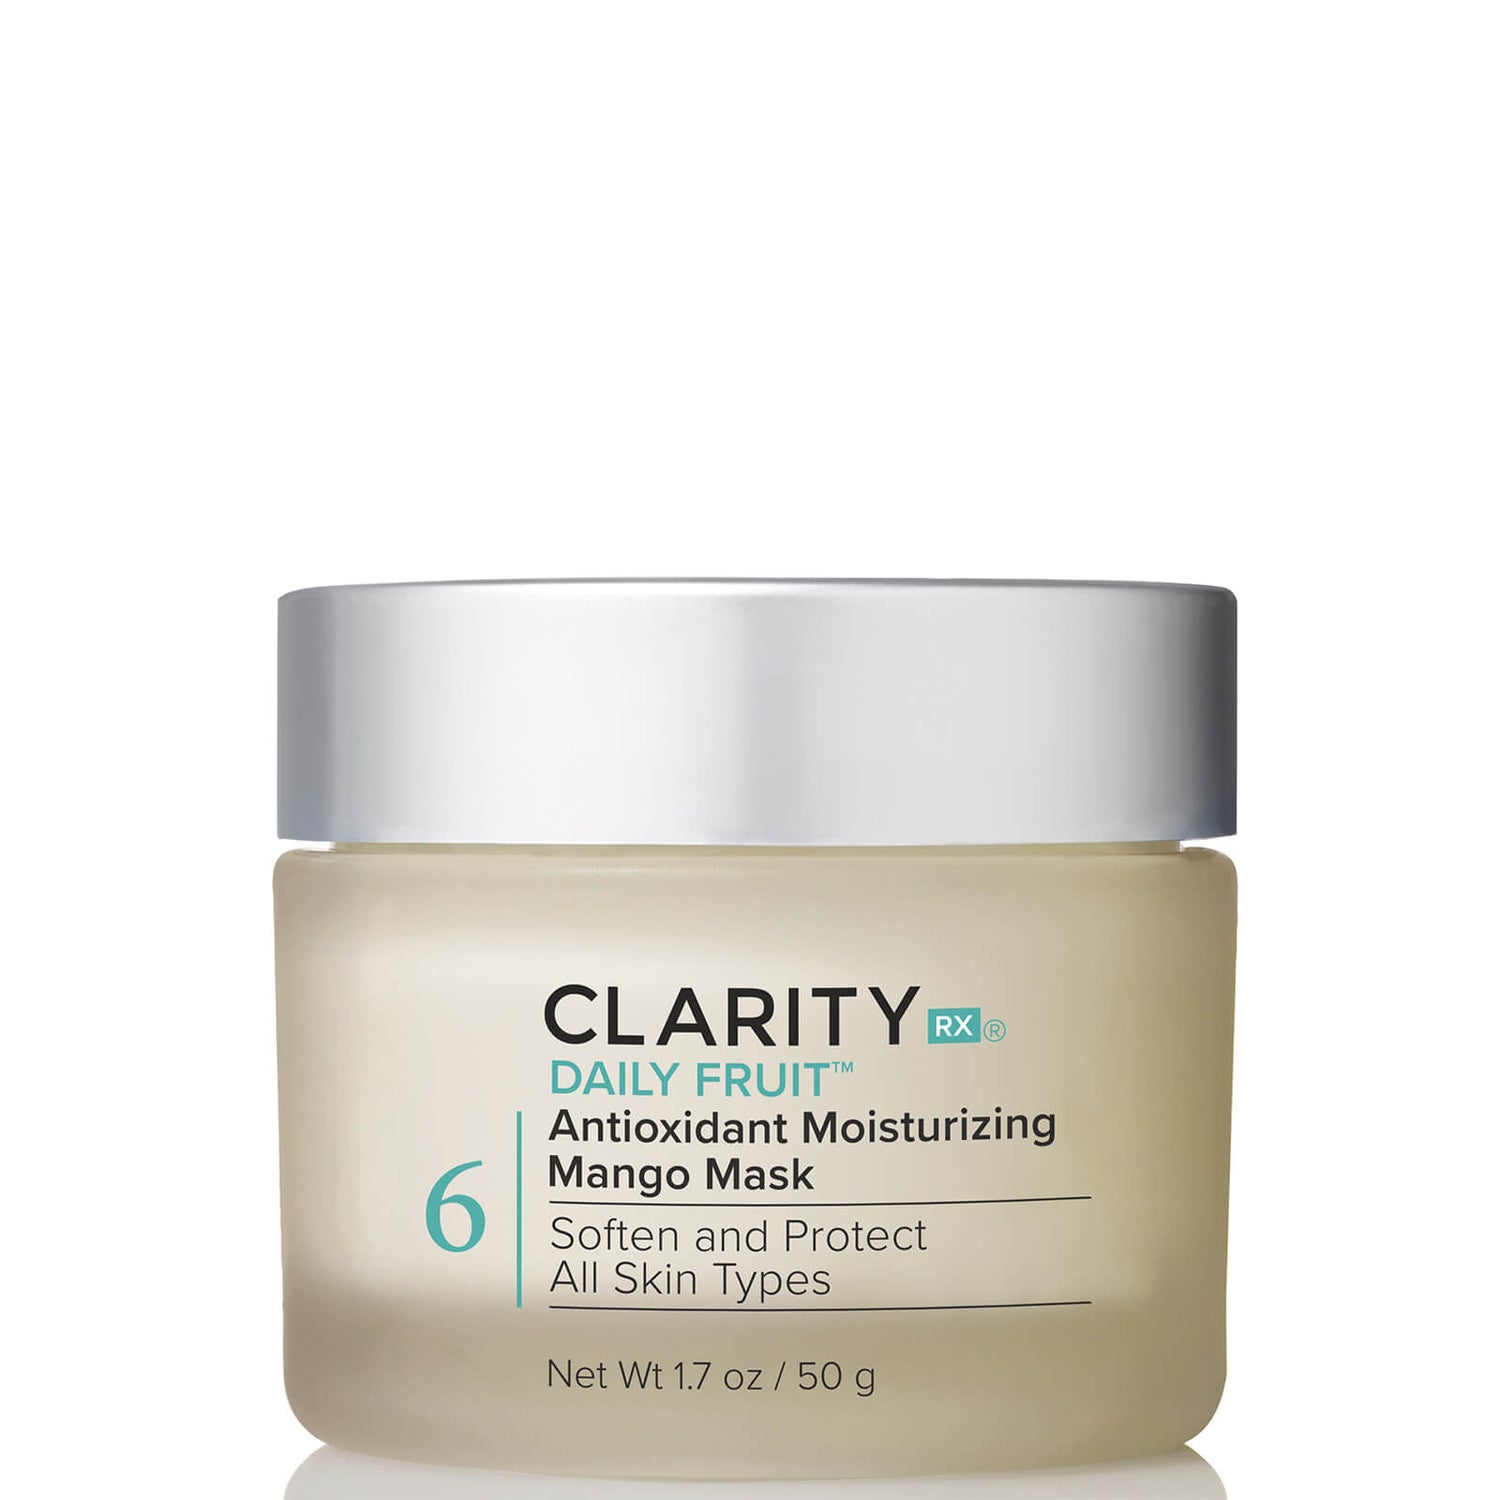 ClarityRx Daily Fruit Antioxidant Moisturizing Mango Mask (1.7 oz.)